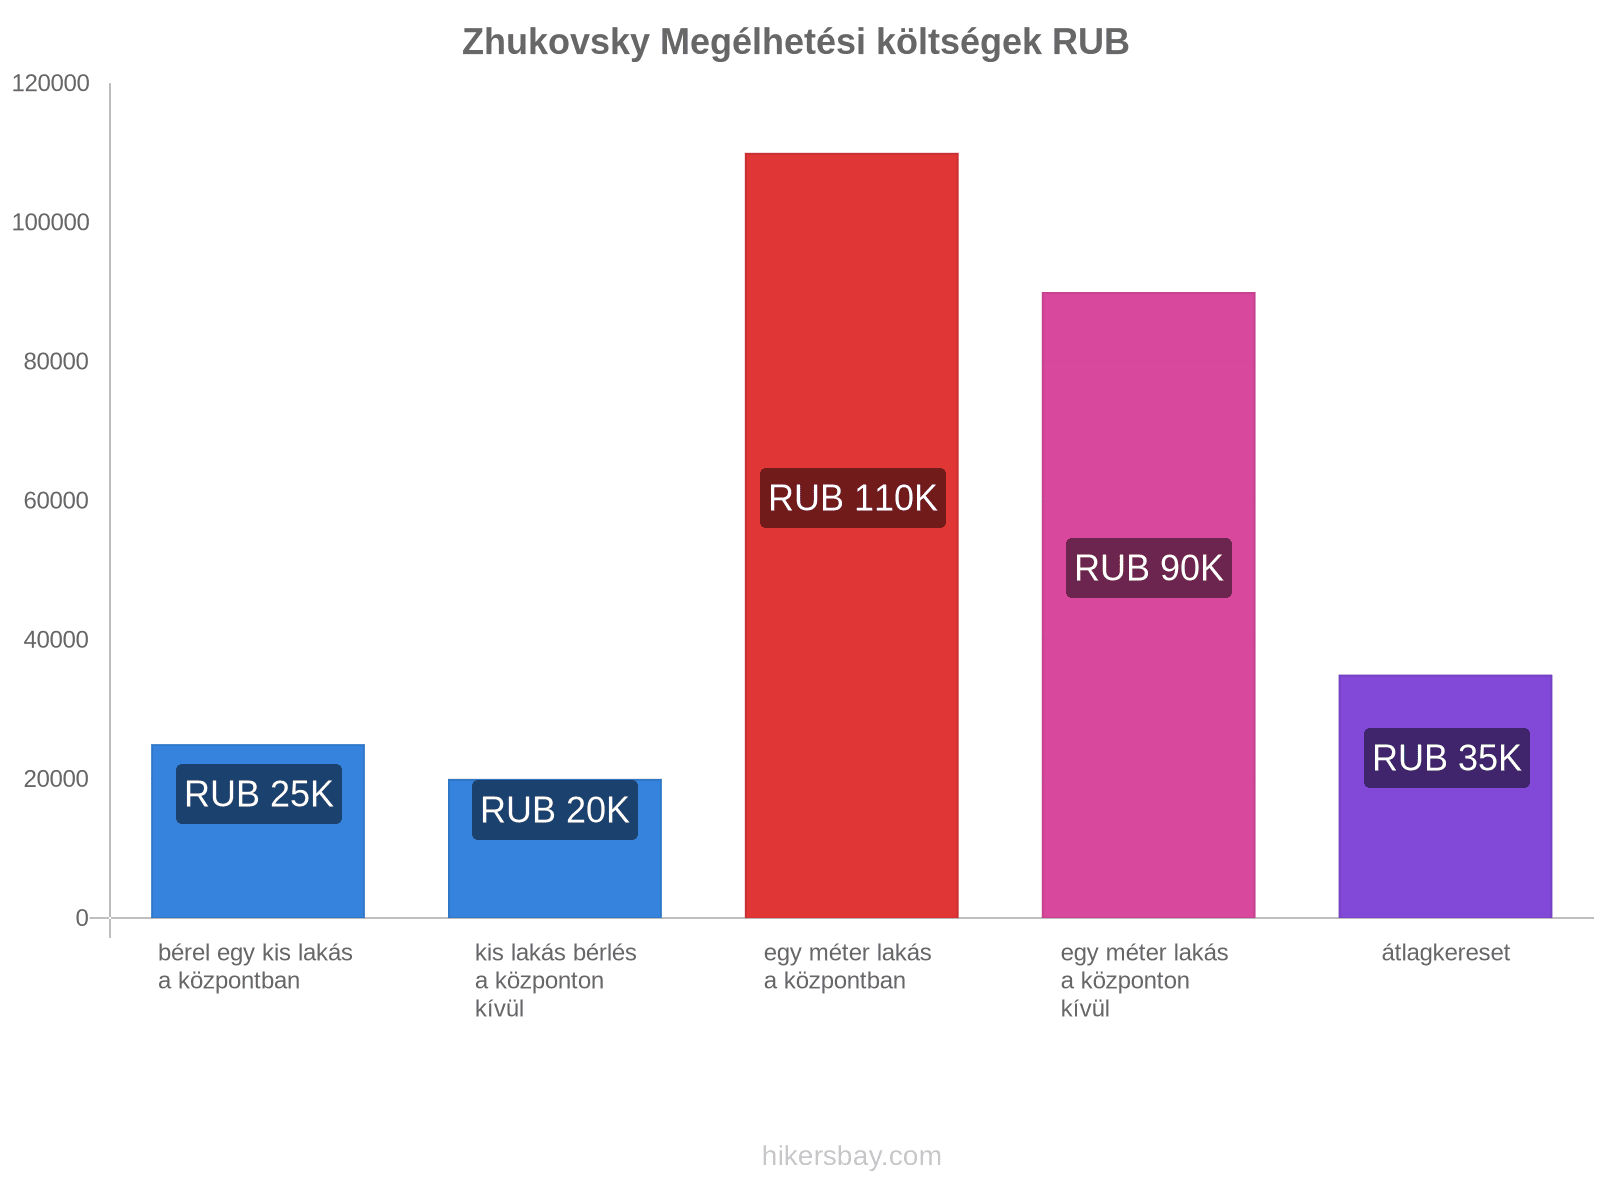 Zhukovsky megélhetési költségek hikersbay.com